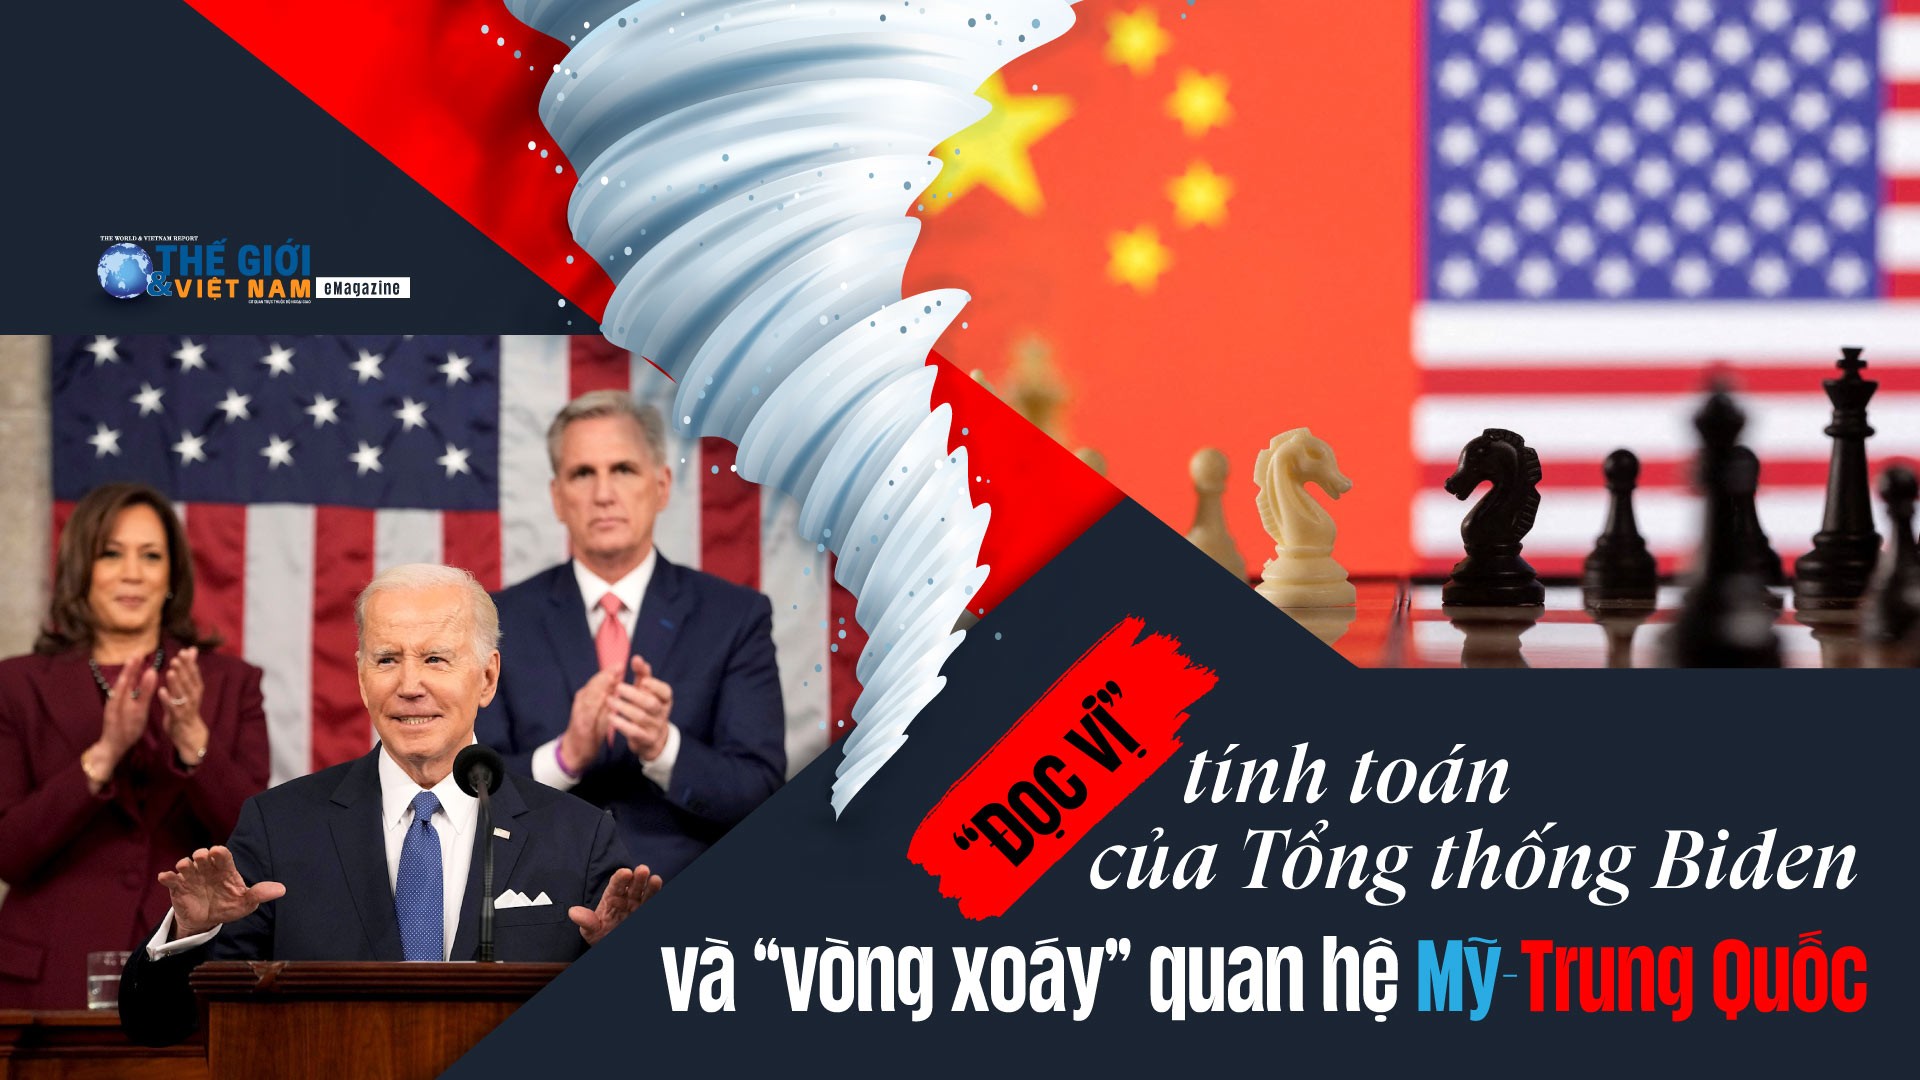 'Đọc vị' tính toán của Tổng thống Biden và 'vòng xoáy' quan hệ Mỹ-Trung Quốc